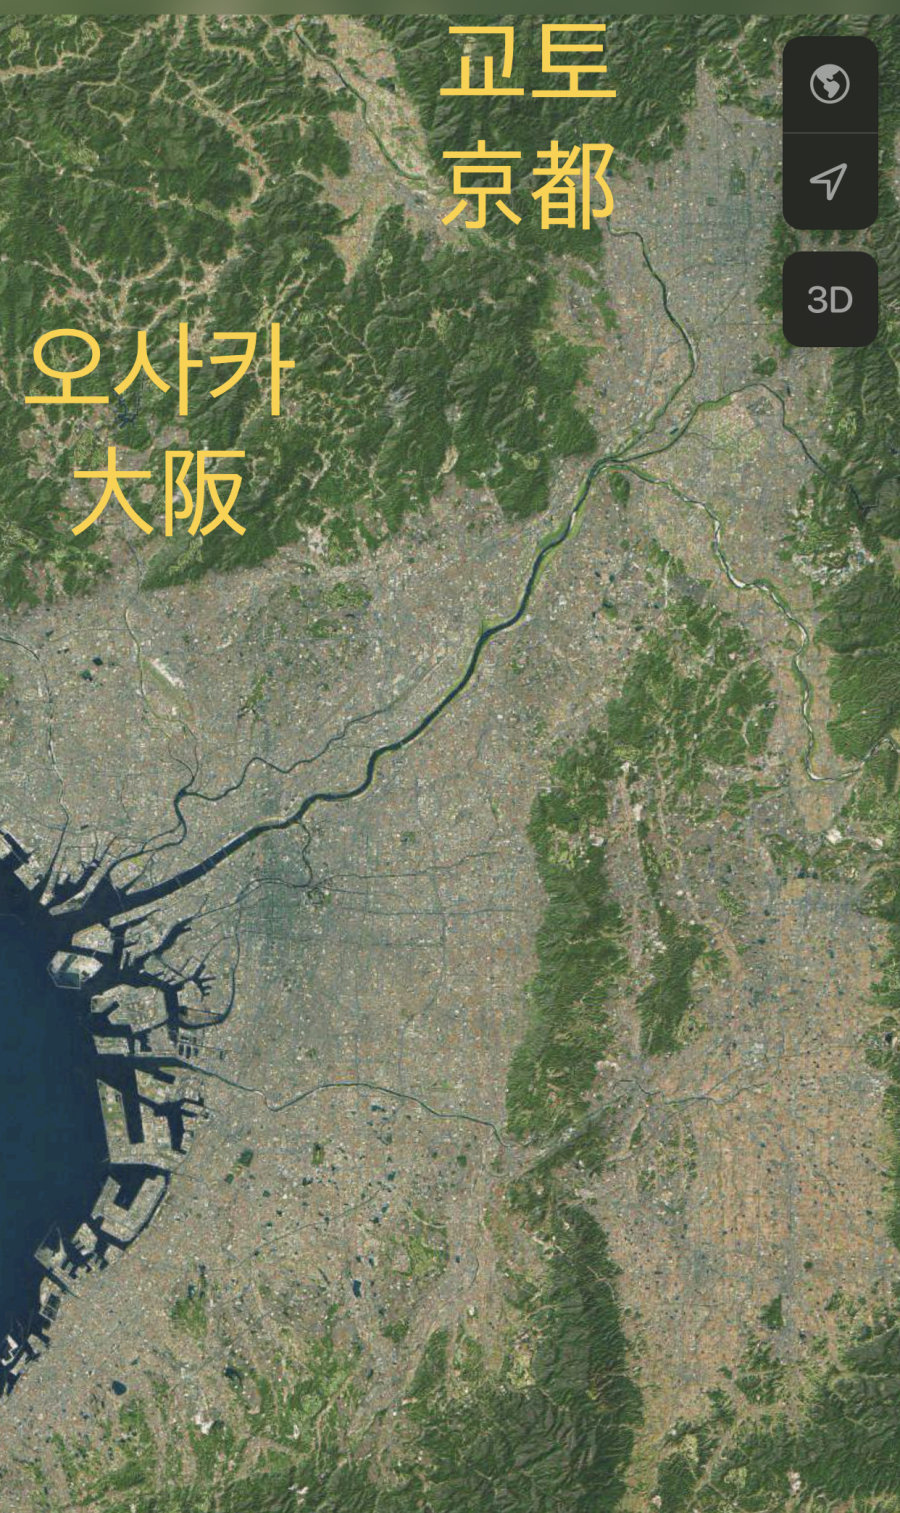 한국도시 VS 일본도시 지형 비교 ㄷㄷㄷㄷ.jpg